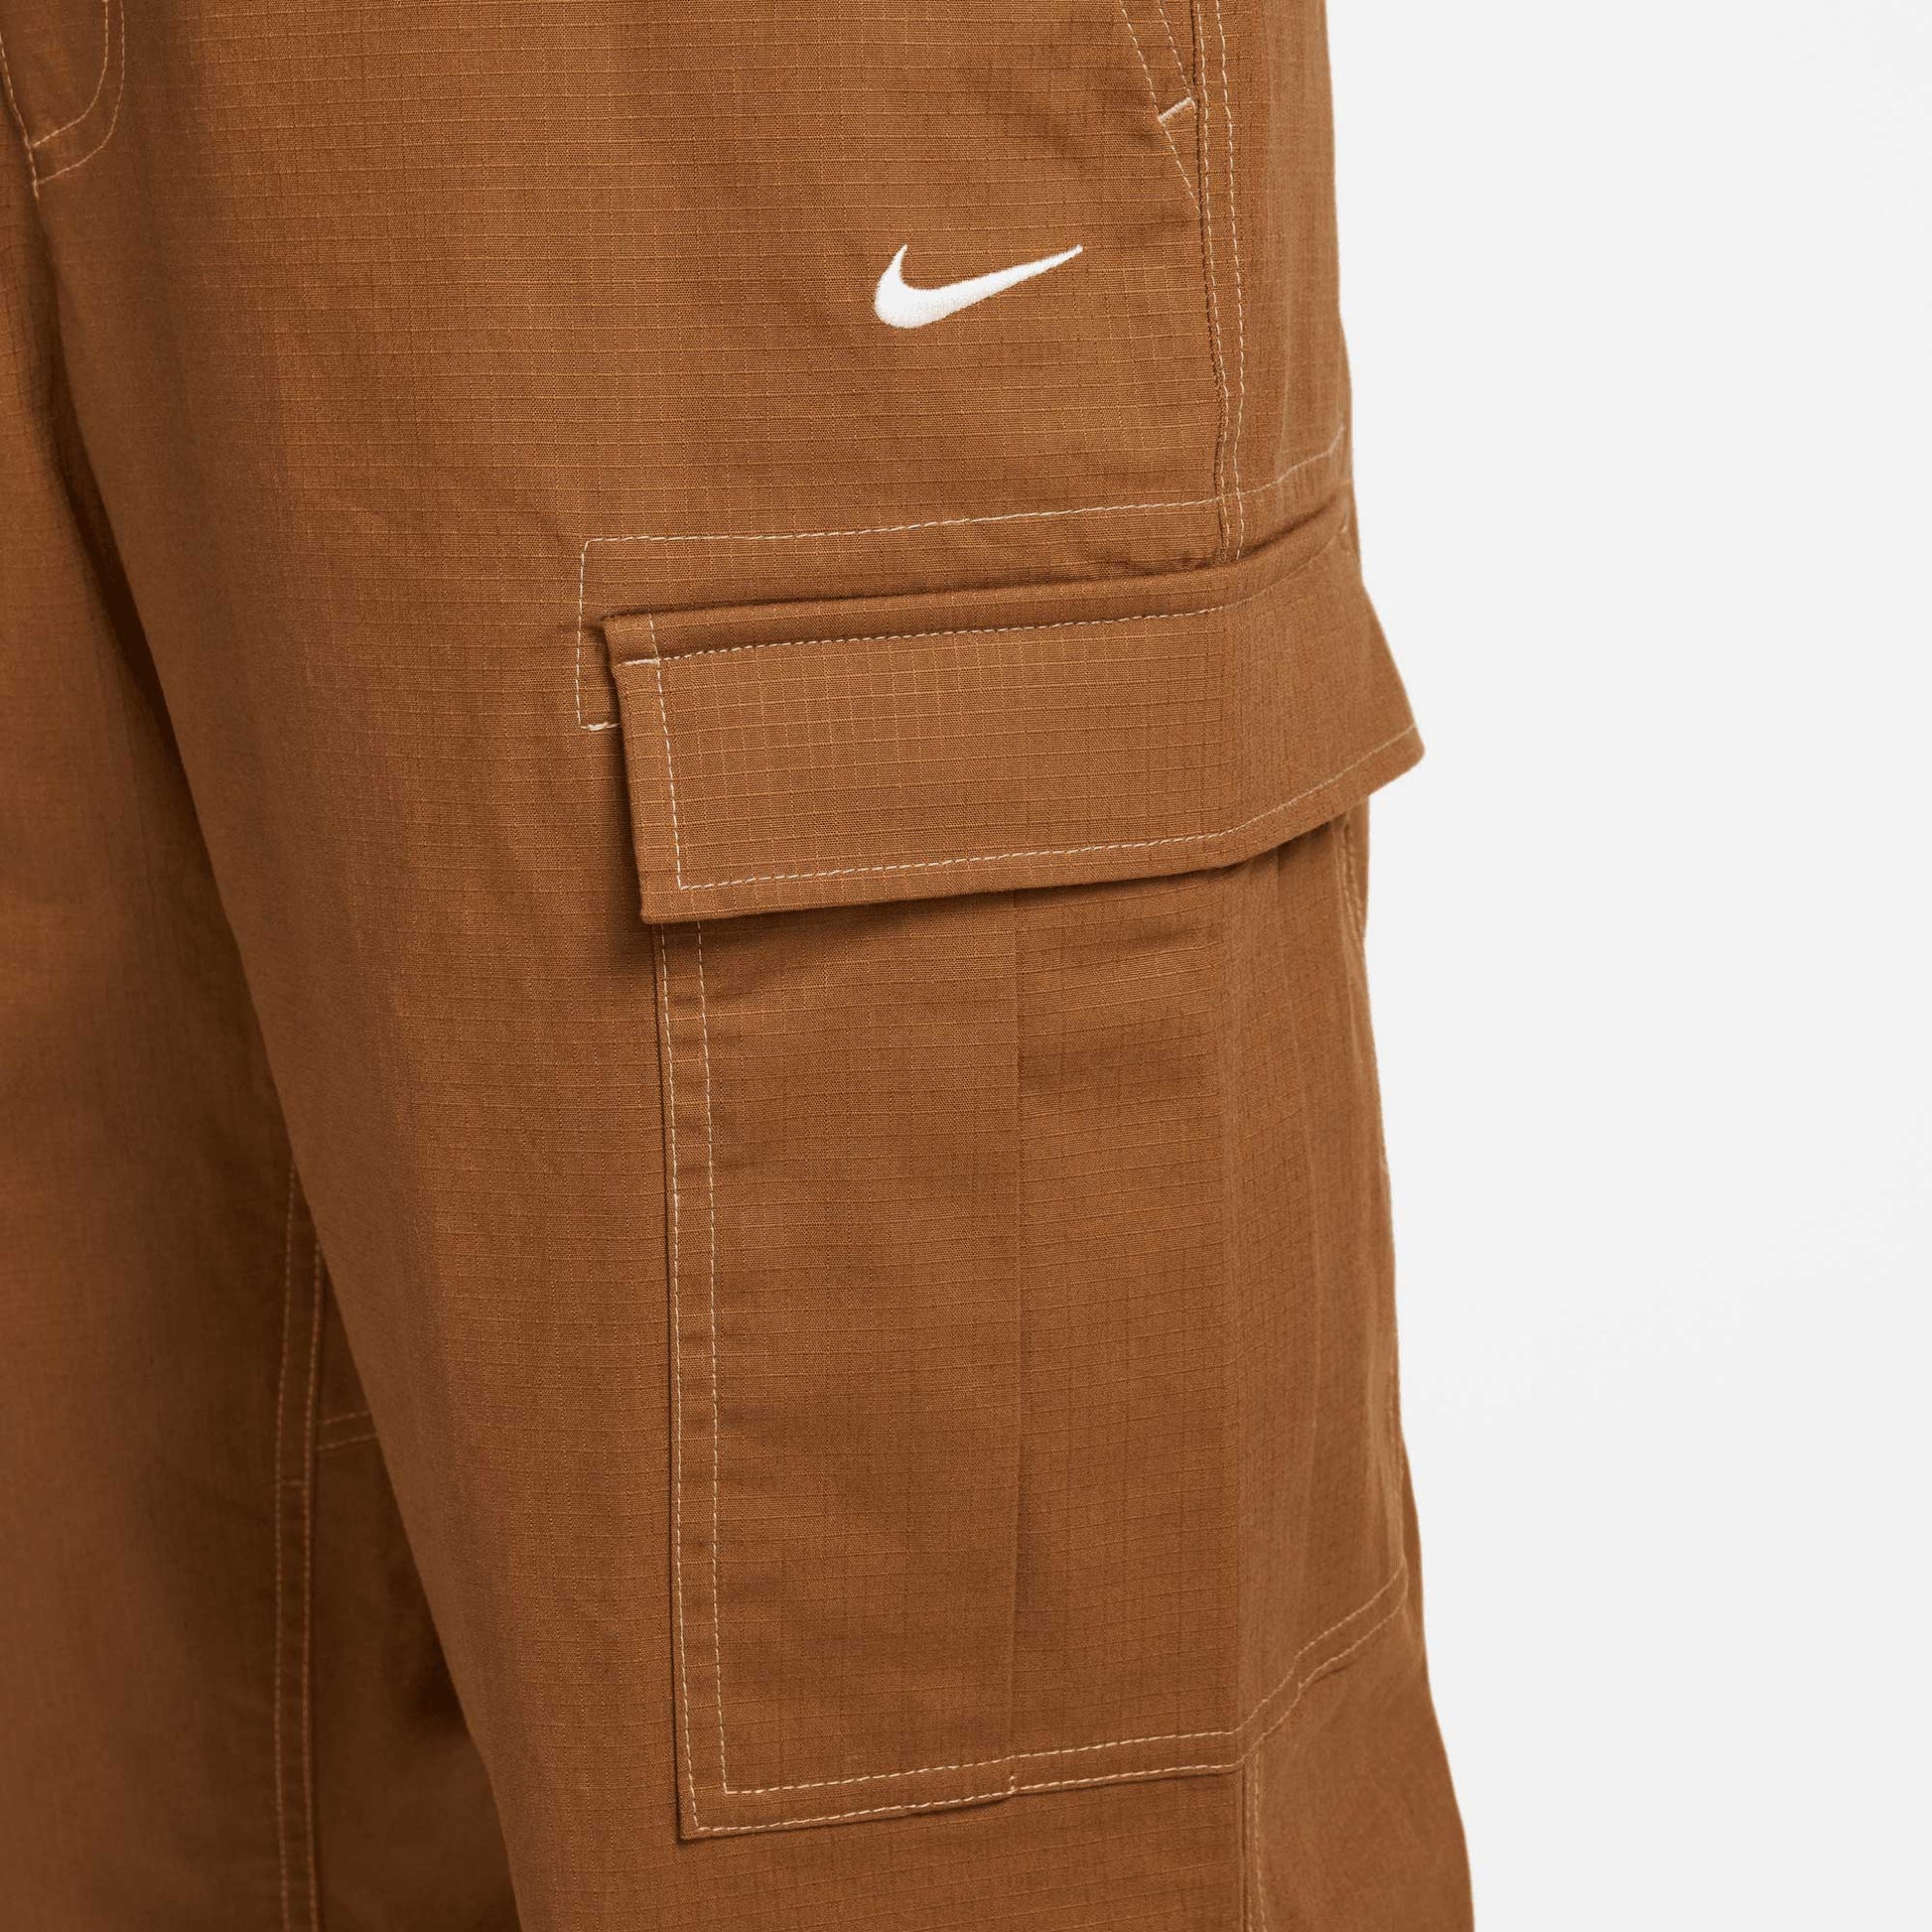 Nike SB Kearny Cargo Pants, ale brown/white - Tiki Room Skateboards - 4